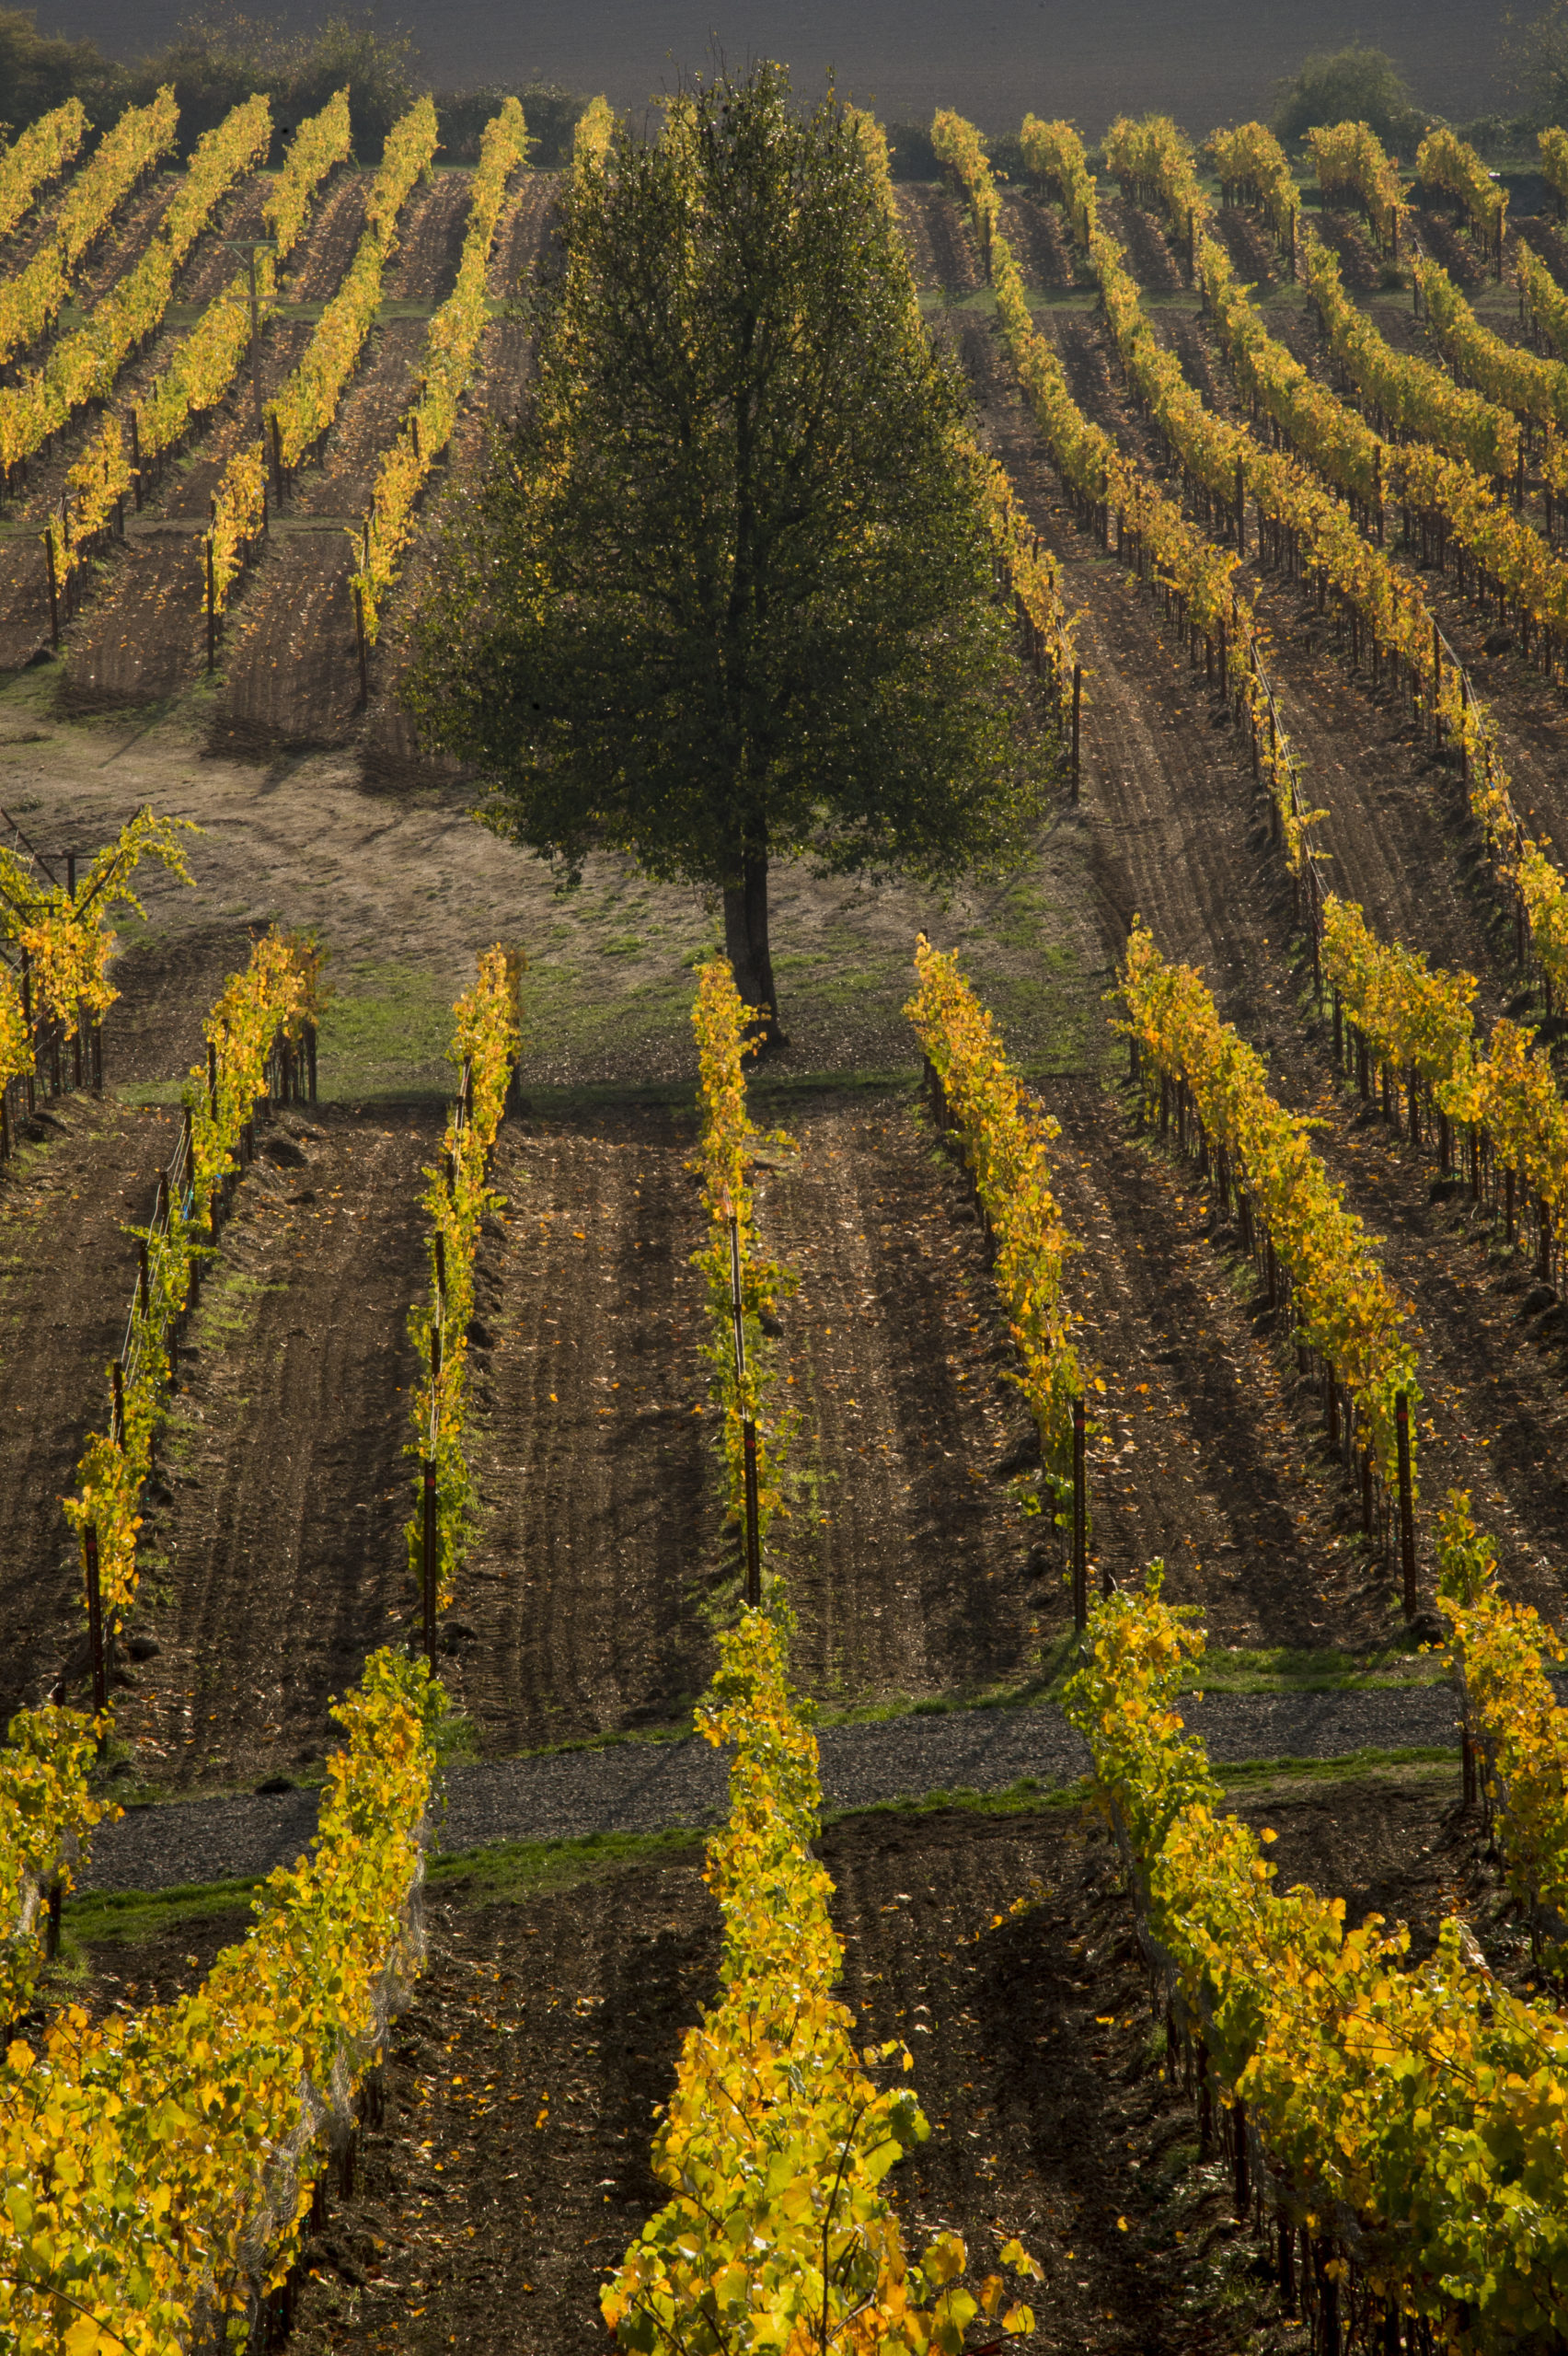 Keeler Estate Vineyard & Winery